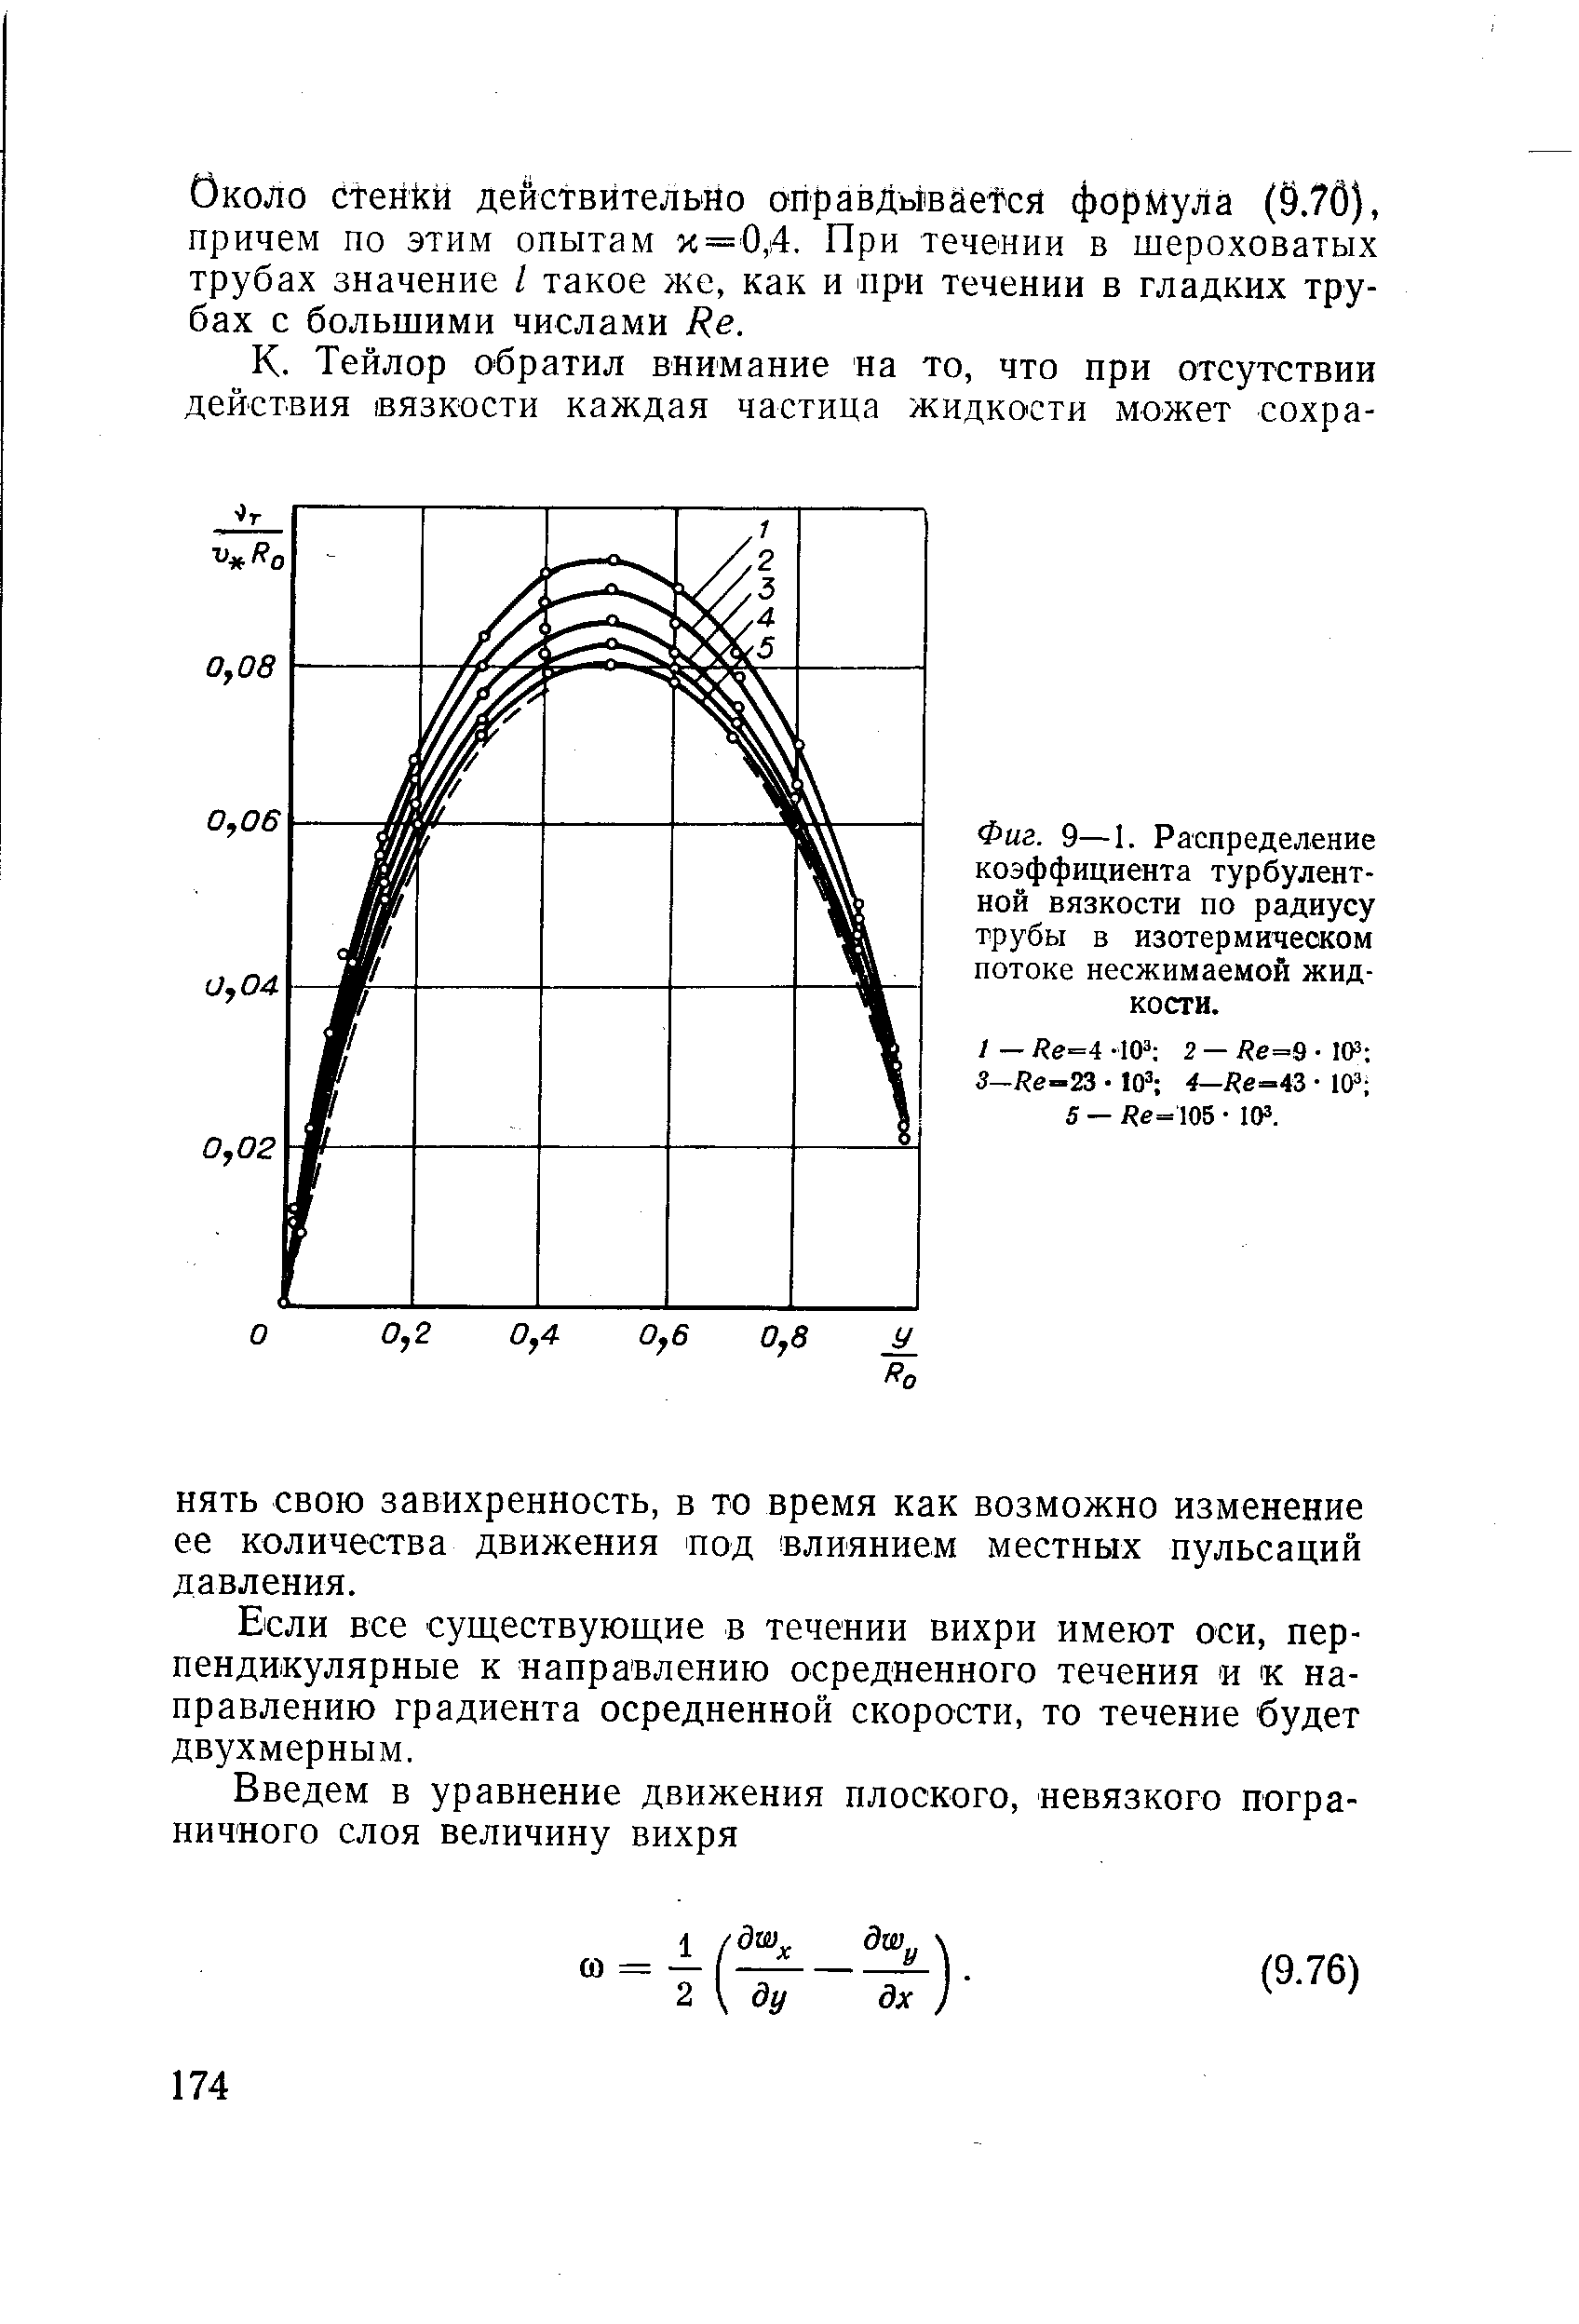 Фиг. 9—I. Распределение <a href="/info/21708">коэффициента турбулентной вязкости</a> по радиусу трубы в изотермическом потоке несжимаемой жидкости.
